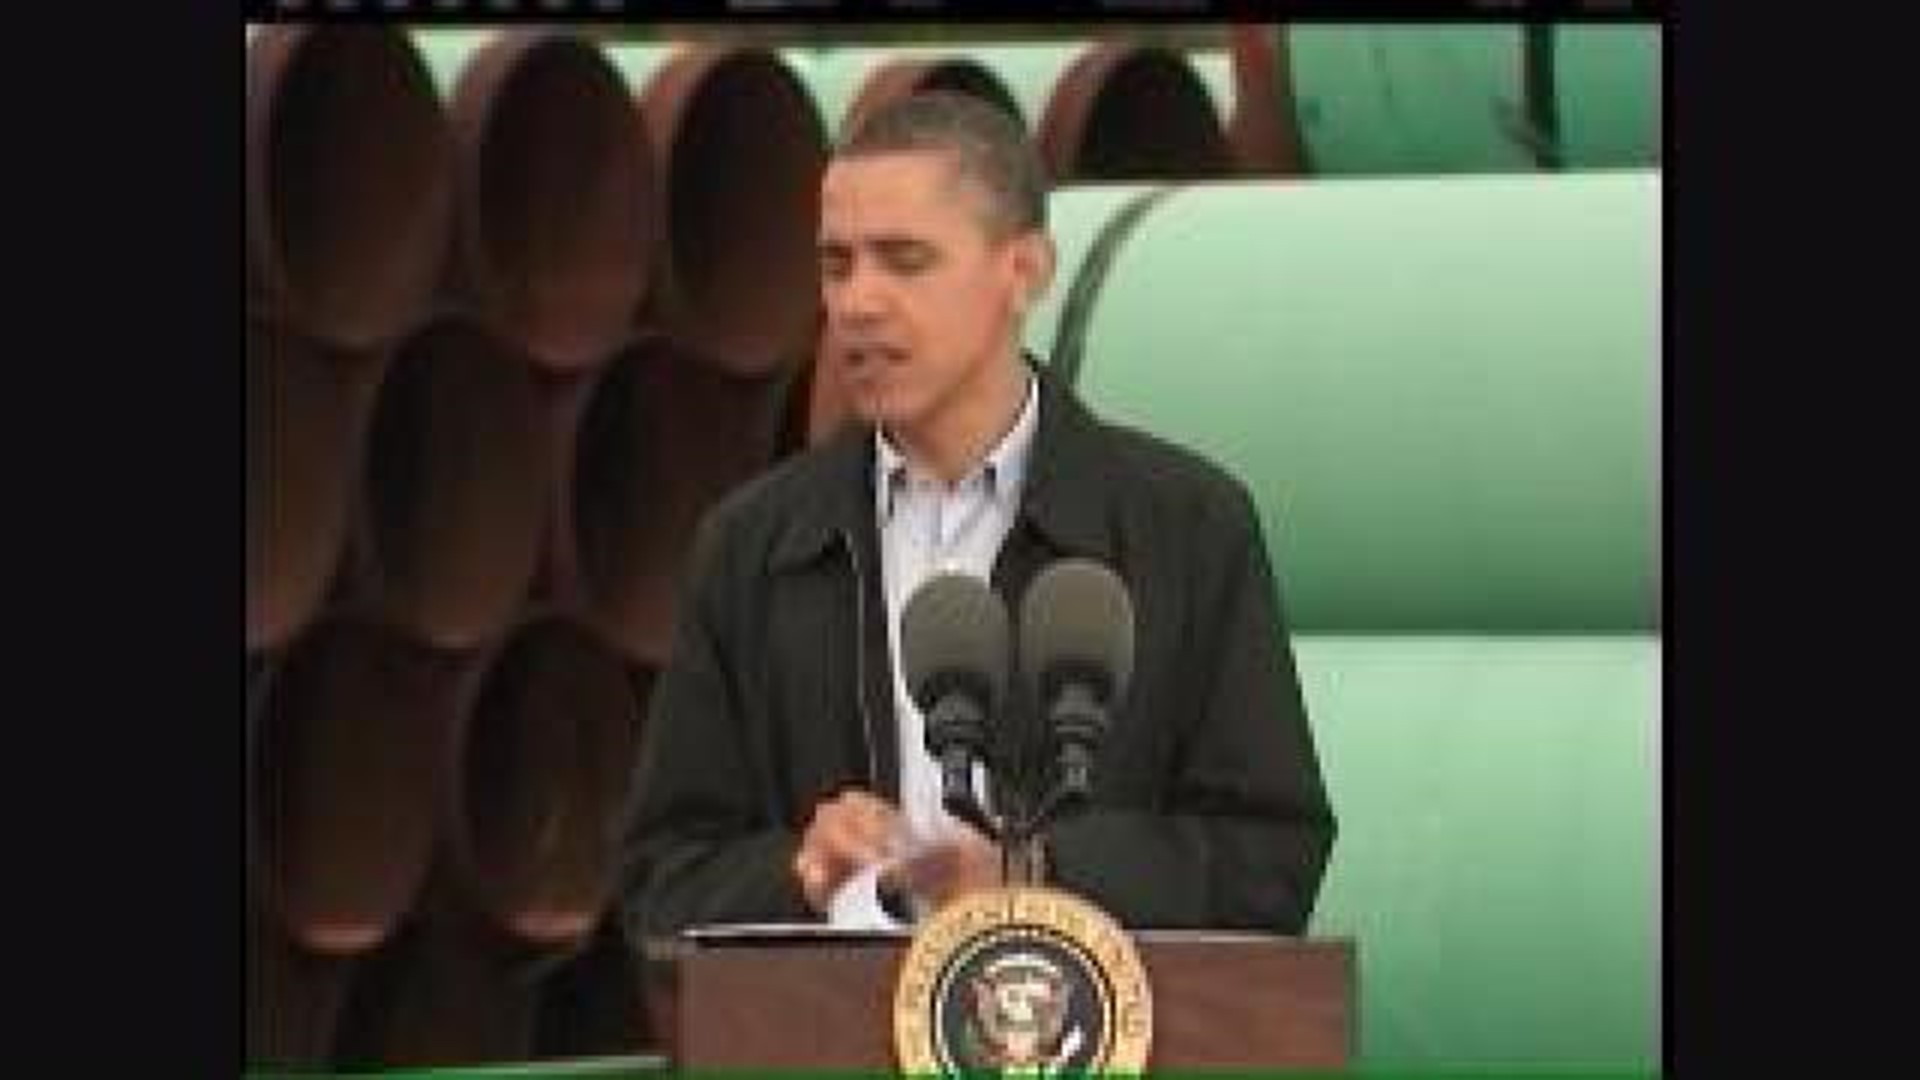 President Obama Discusses Pipeline in Oklahoma